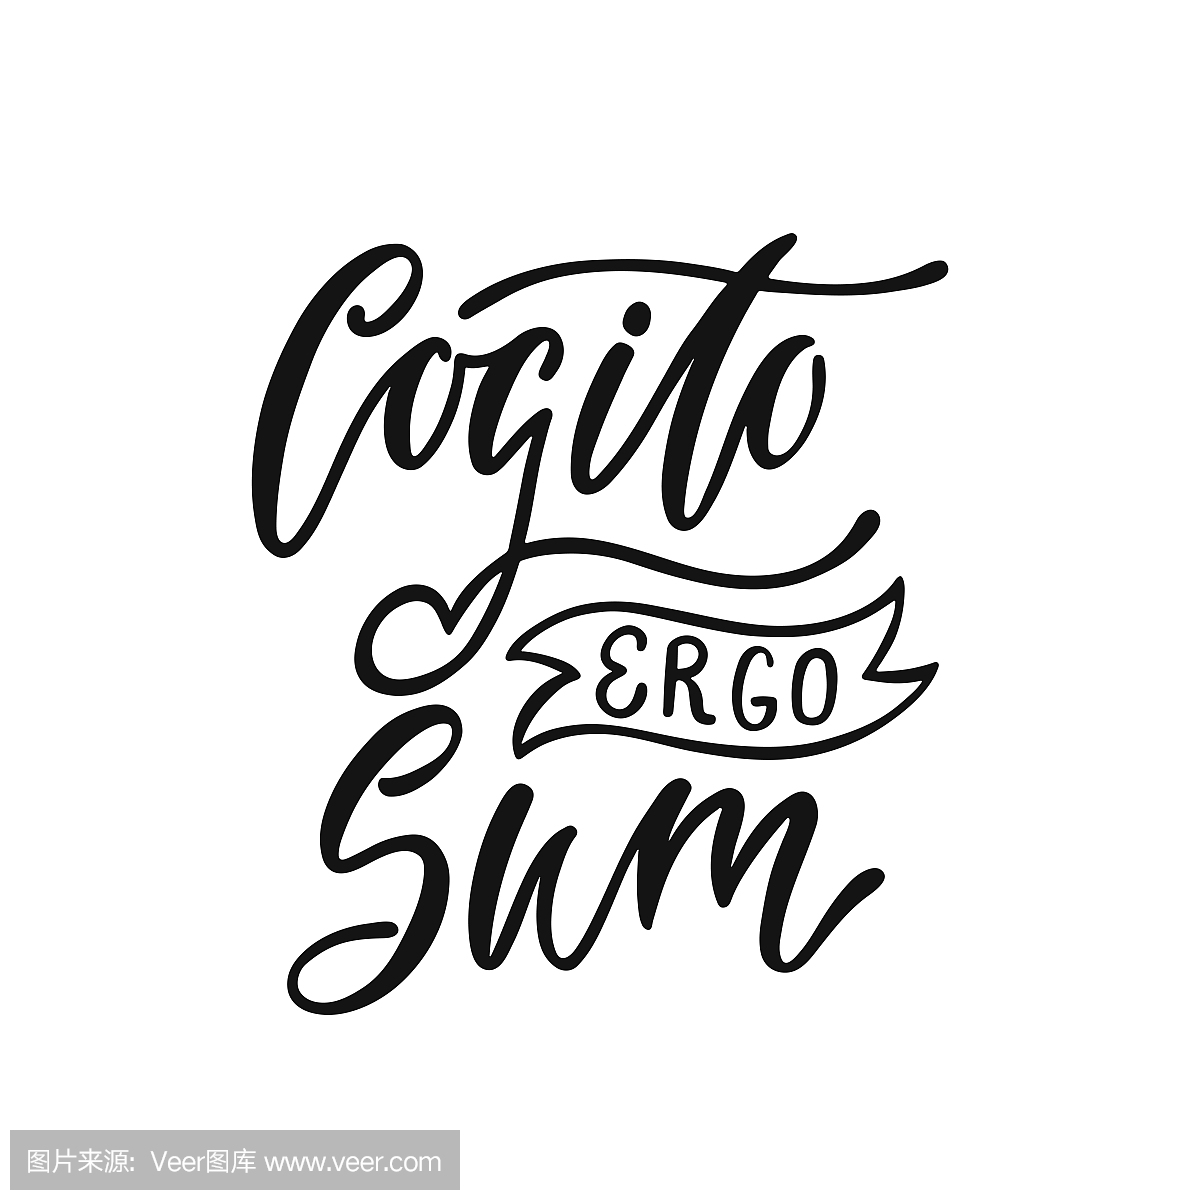 Cogito Ergo Sum - 拉丁语短语意味着我想,因此